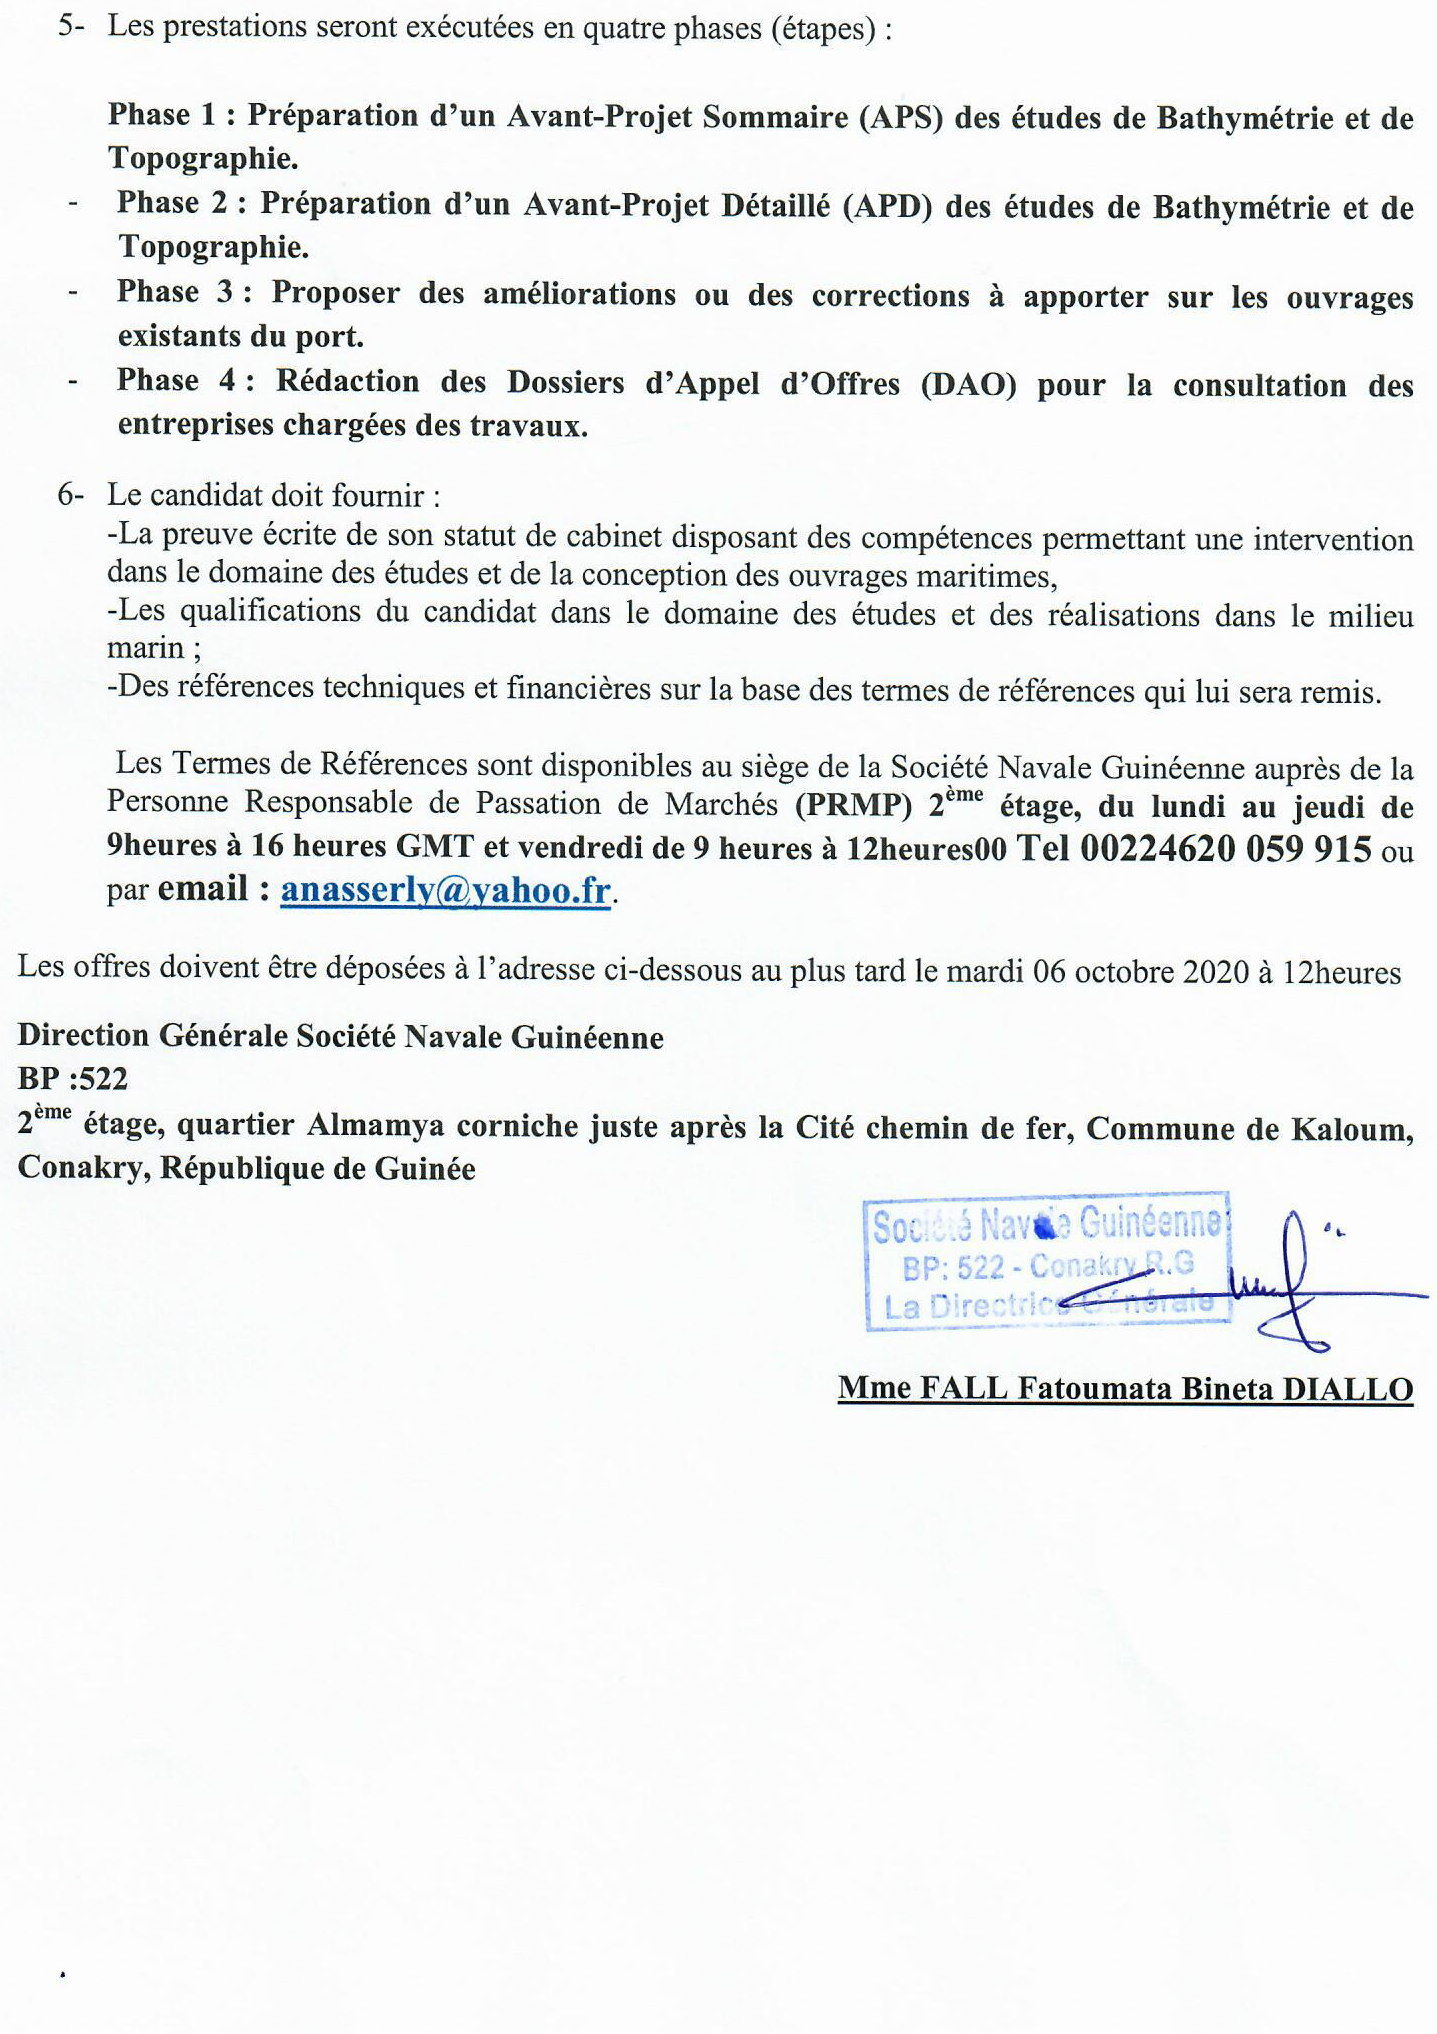 Offre d'emploi de la société navale de Guinée (SNG) partie 2